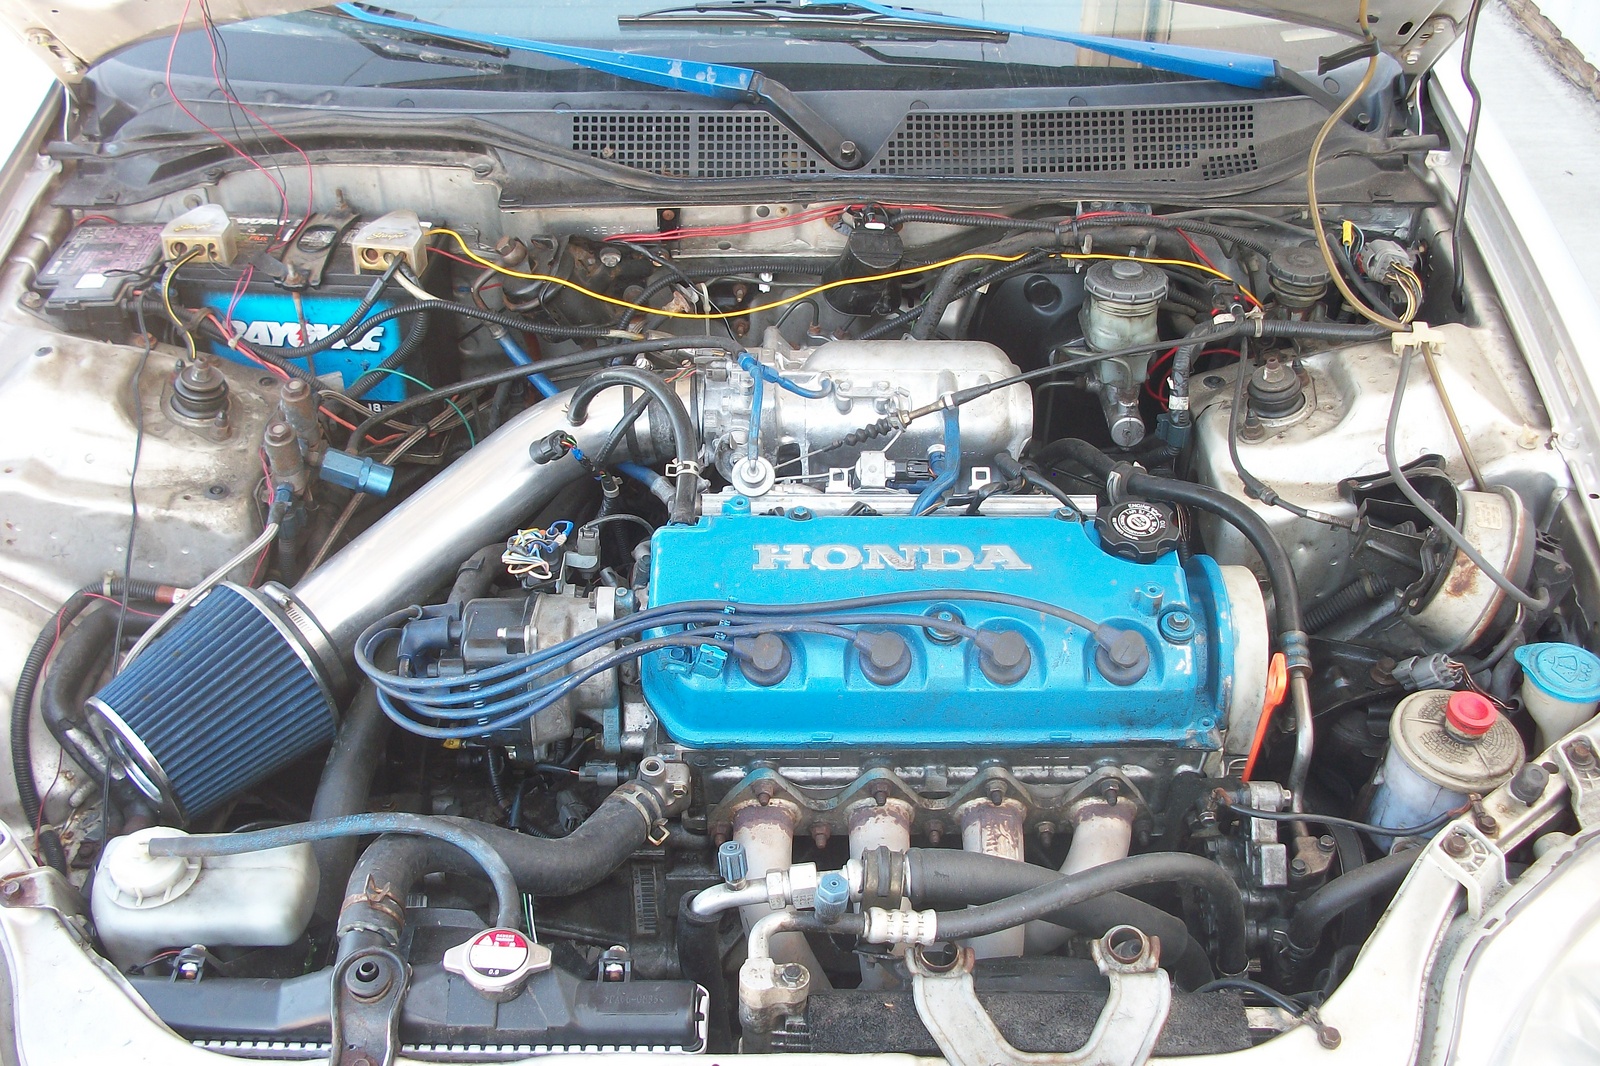 1997 Honda civic ex coupe engine specs #4